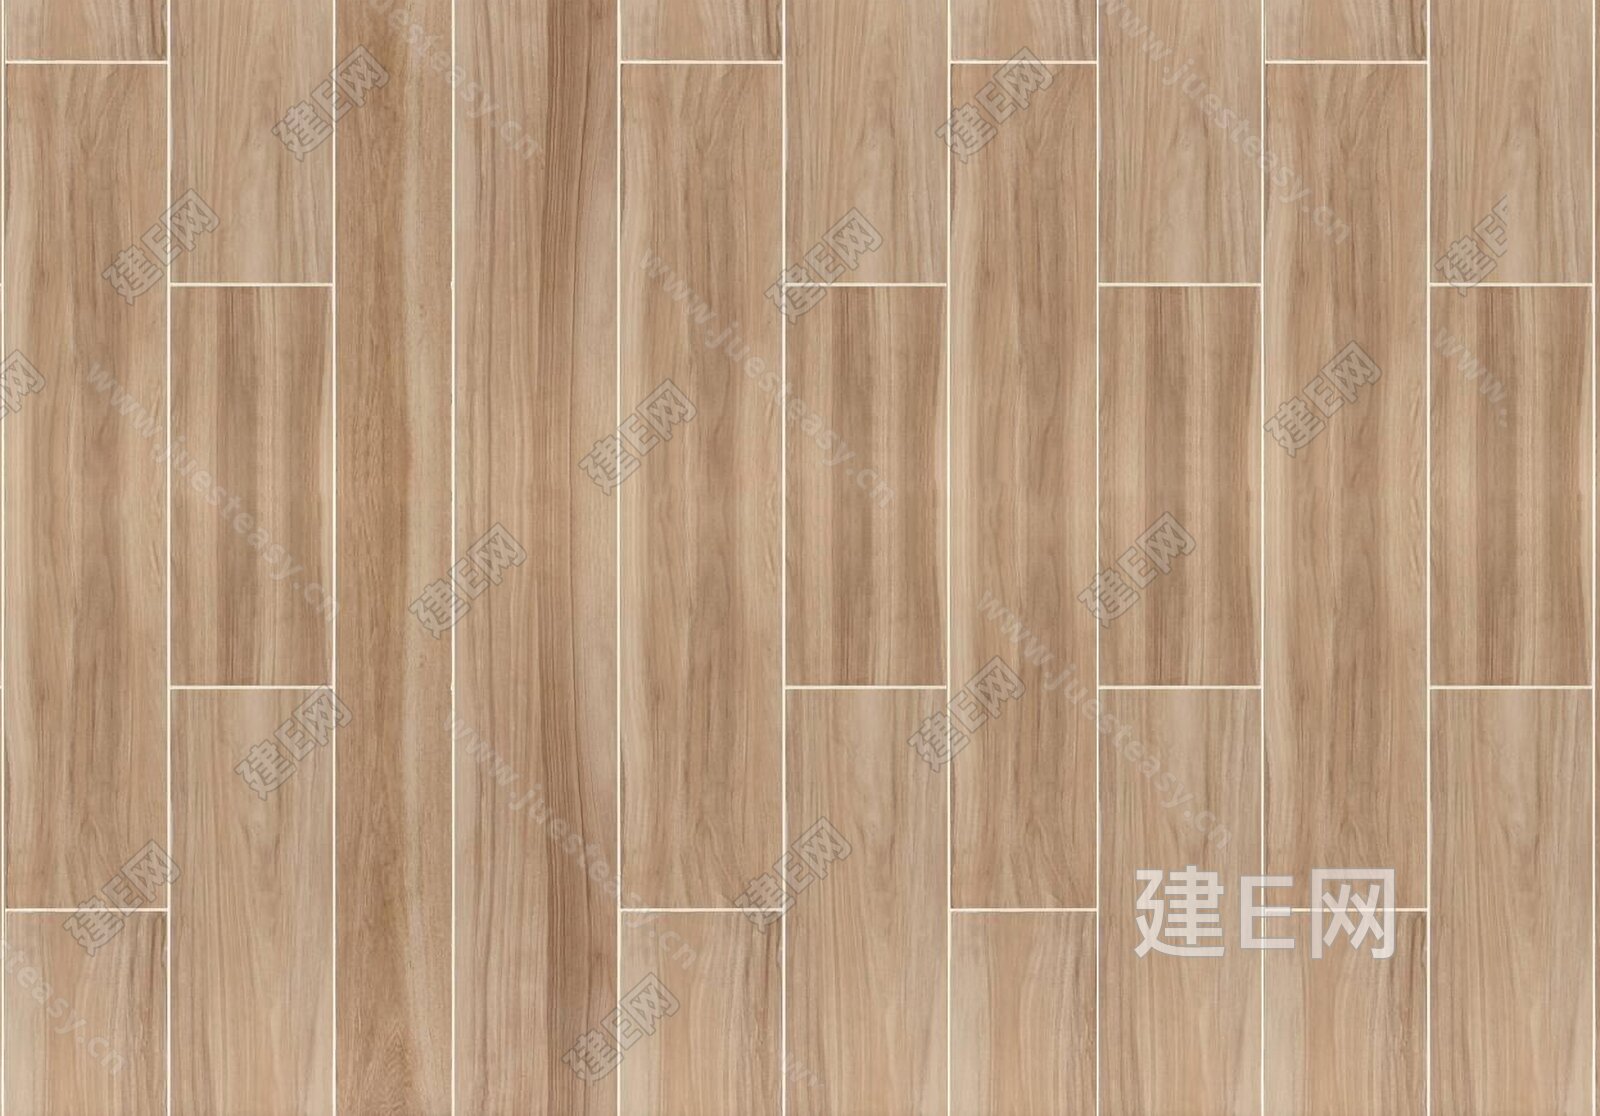 用木地板做背景墙提升质感 115平北欧风格装修效果图 - 本地资讯 - 装一网